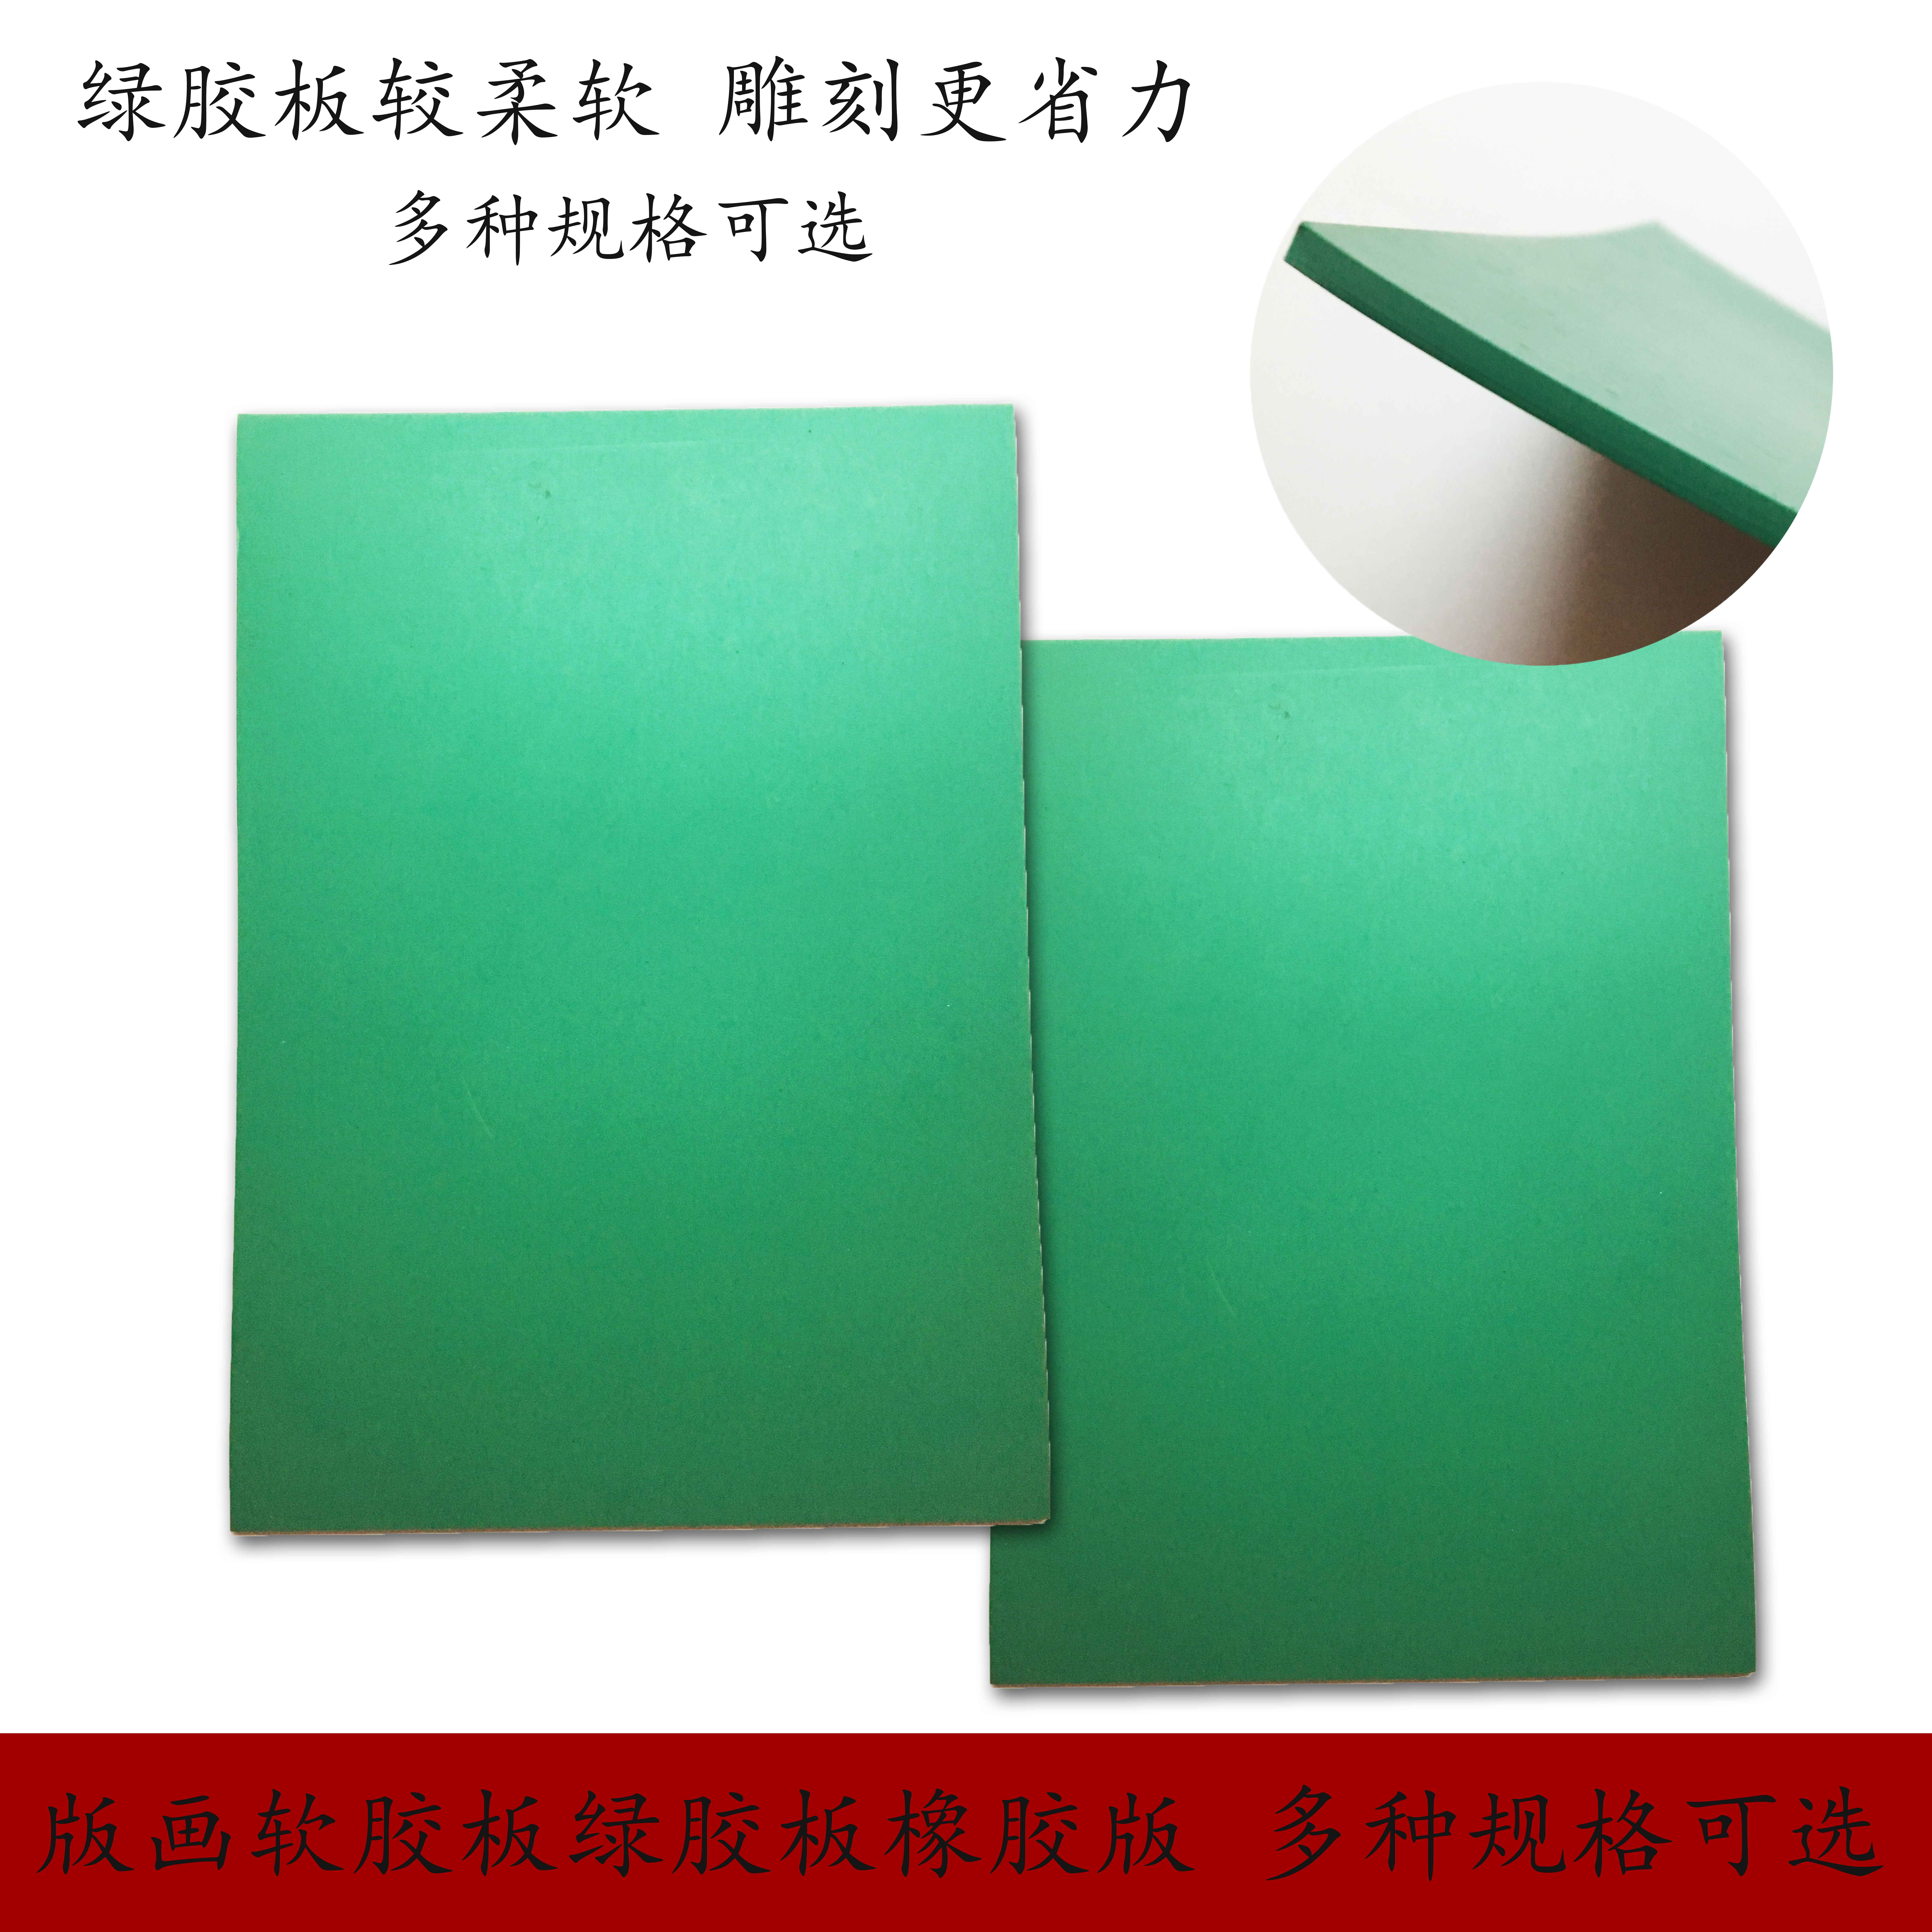 绿色pvc软胶板工作台面垫绿色工业胶板 版画雕刻画板防静电橡胶板